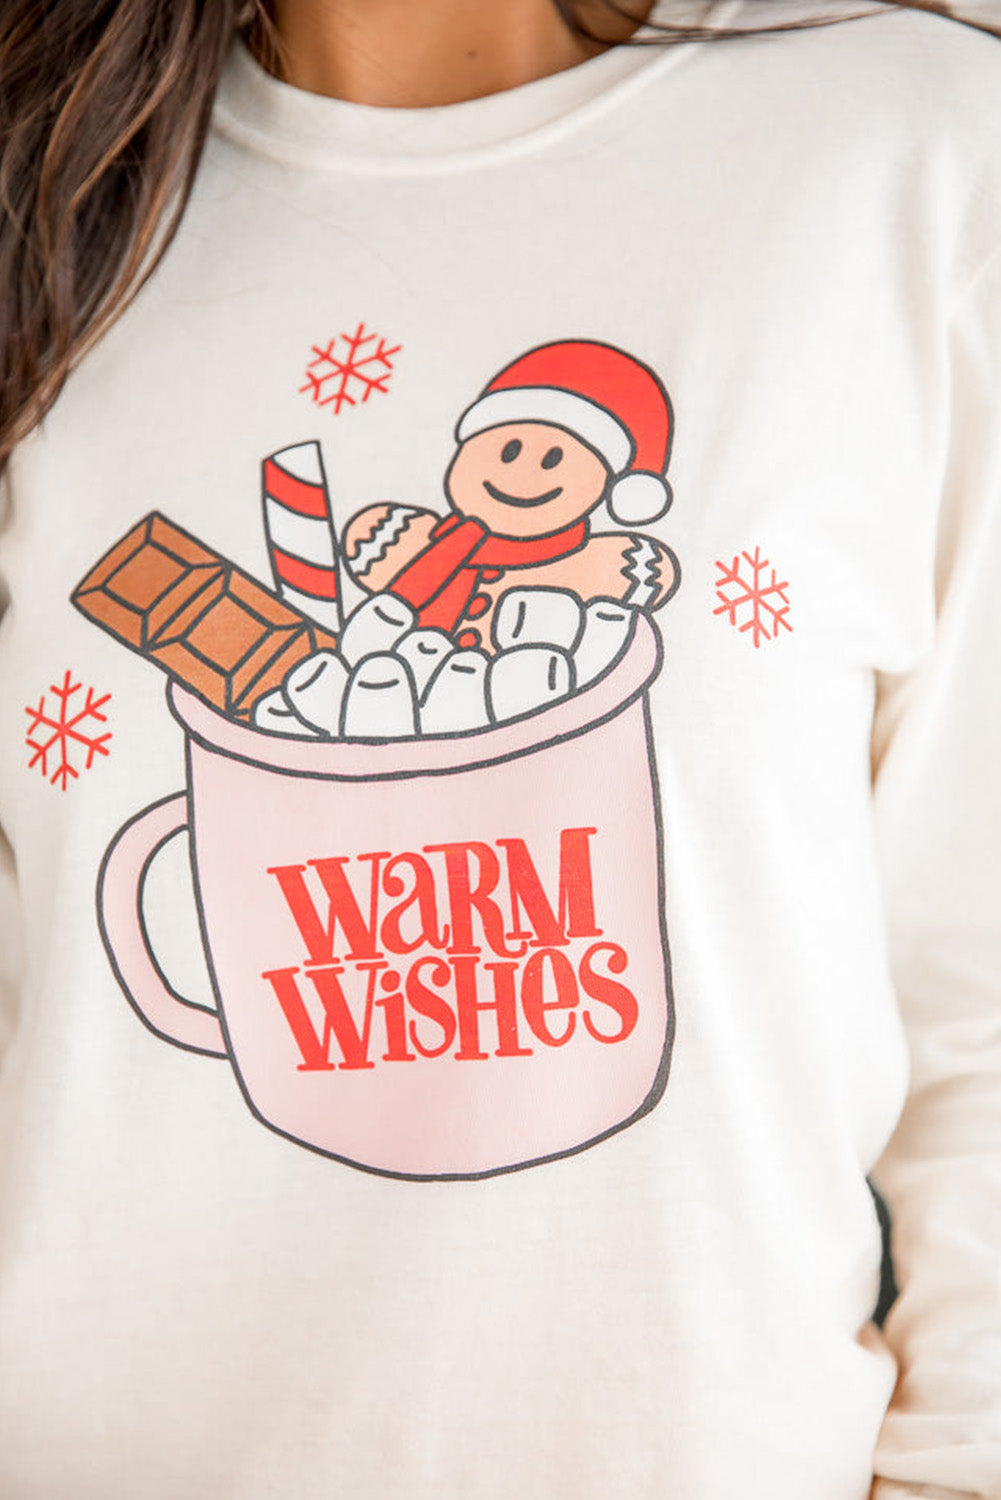 Beige WARM WISHES Christmas Graphic Pullover Sweatshirt Graphic Sweatshirts JT's Designer Fashion